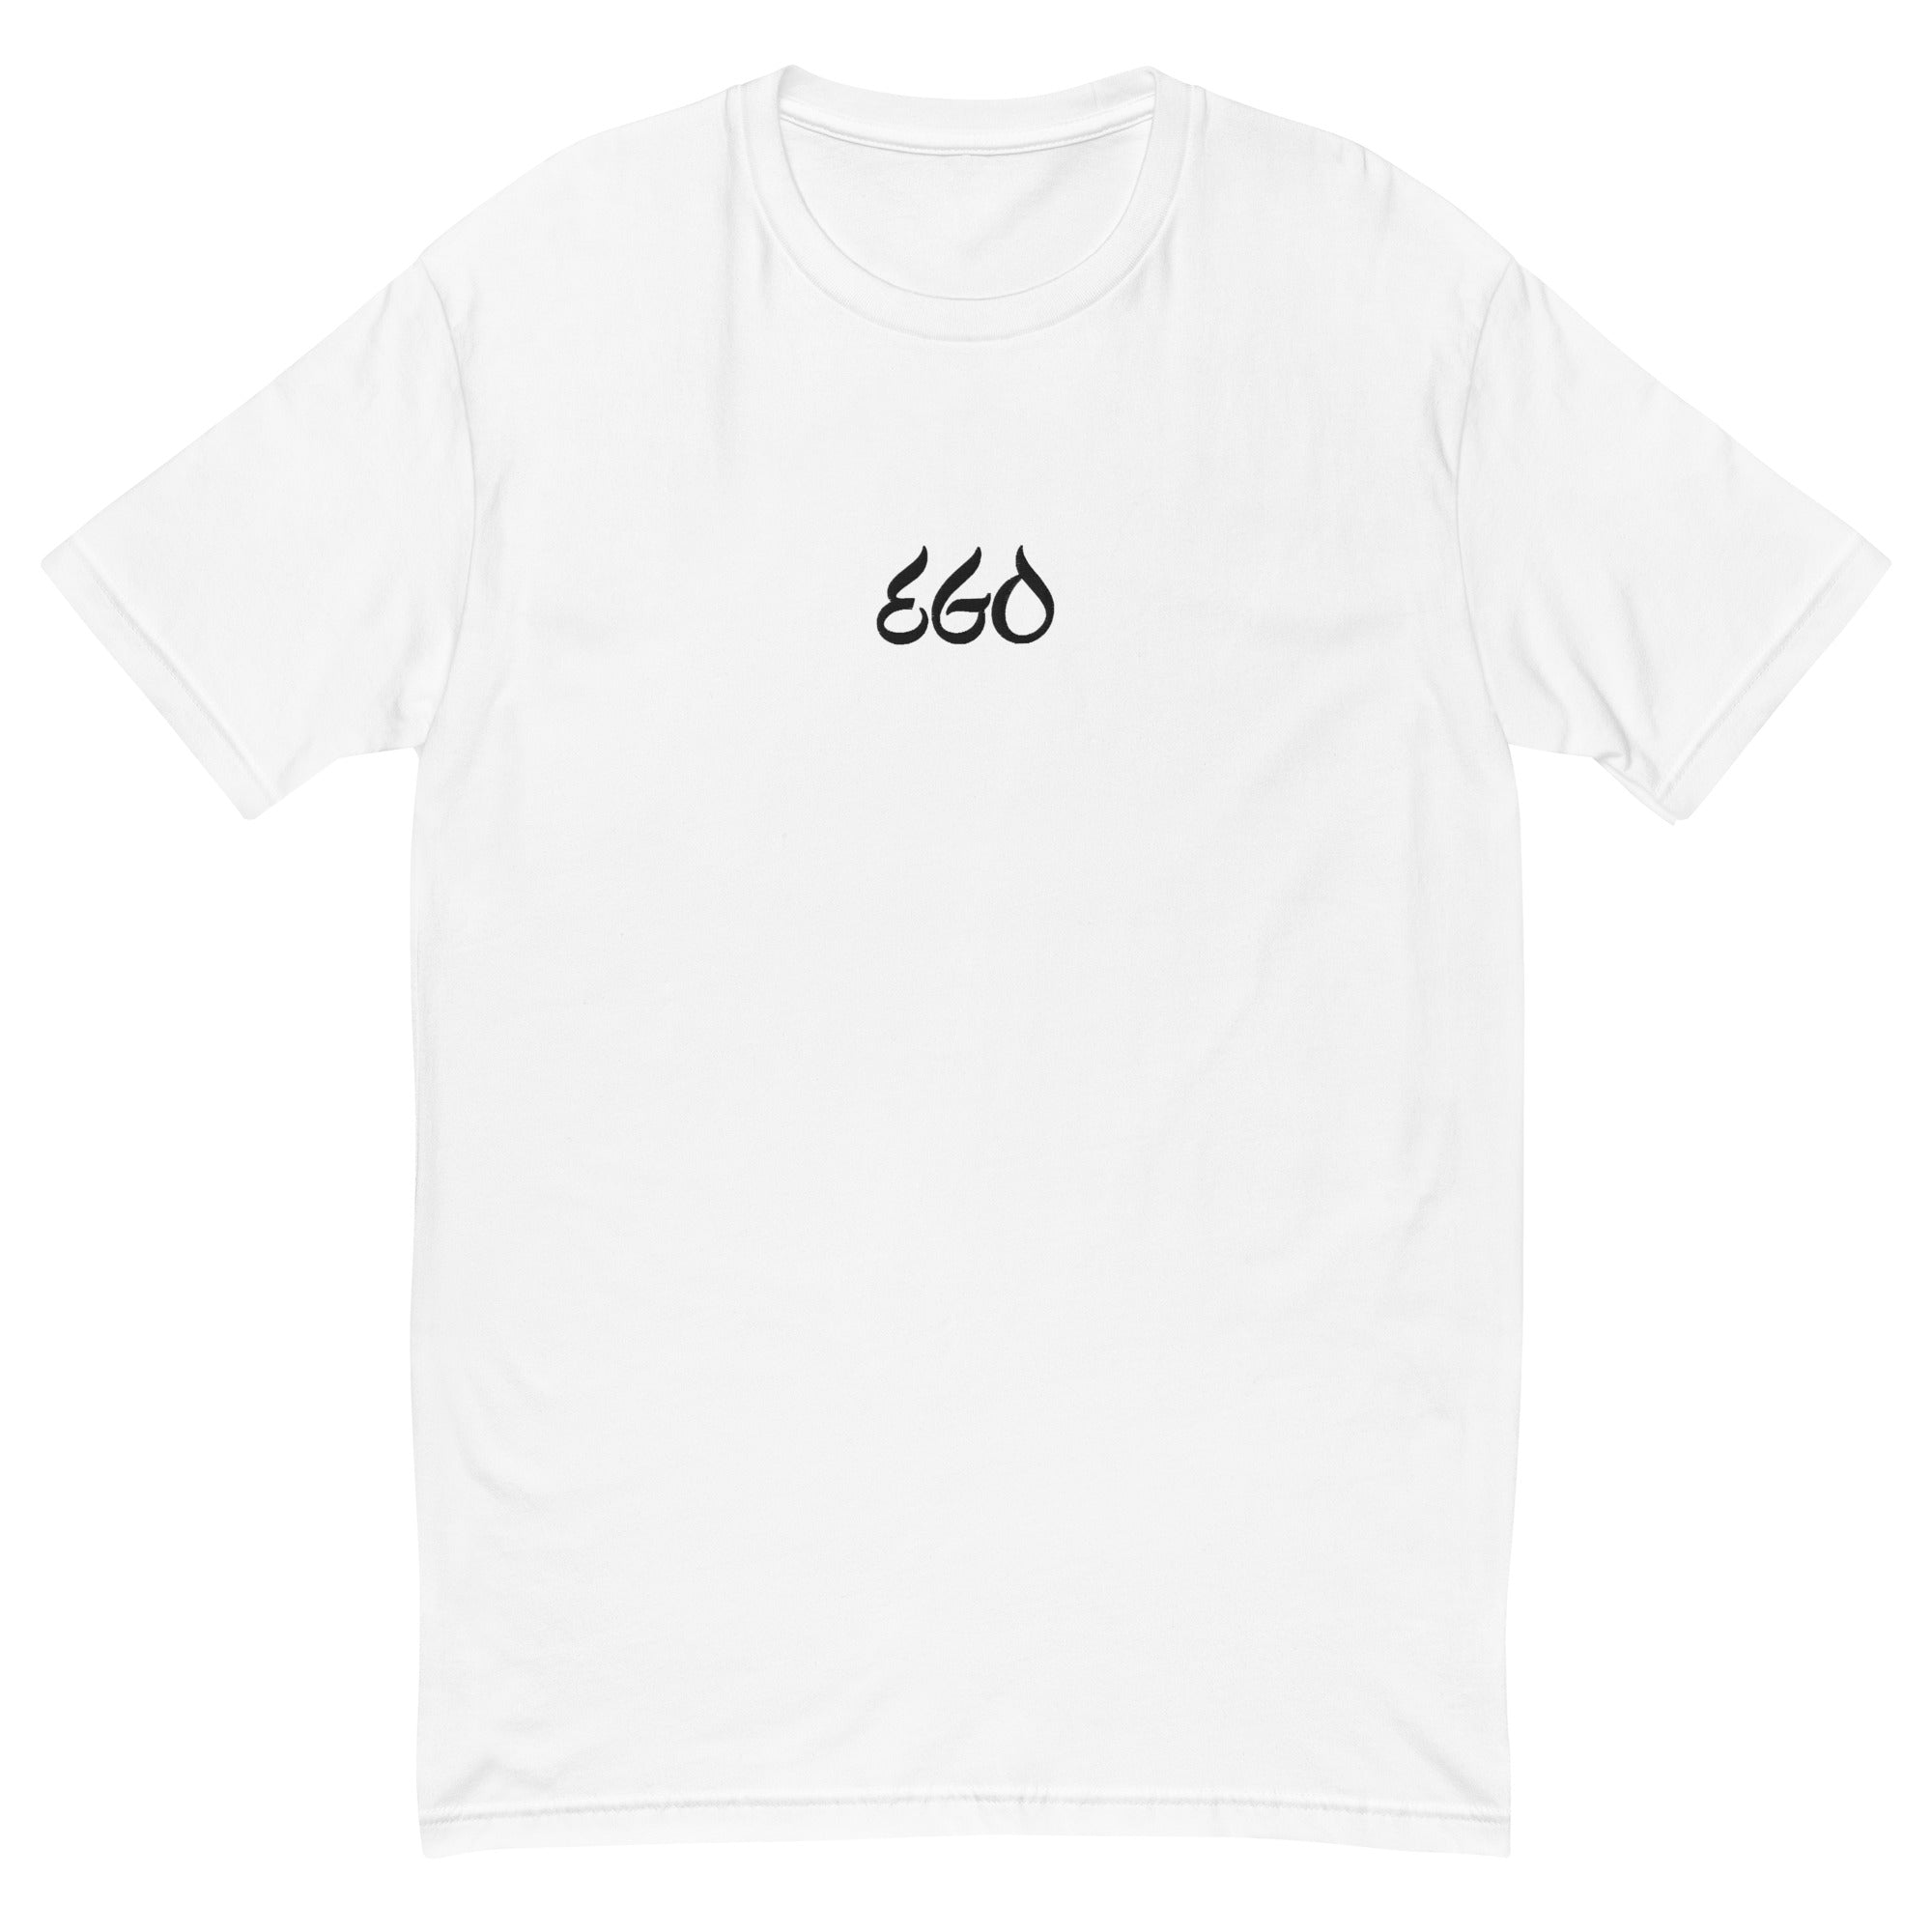 EGO T-Shirt - 'The Selfish World'